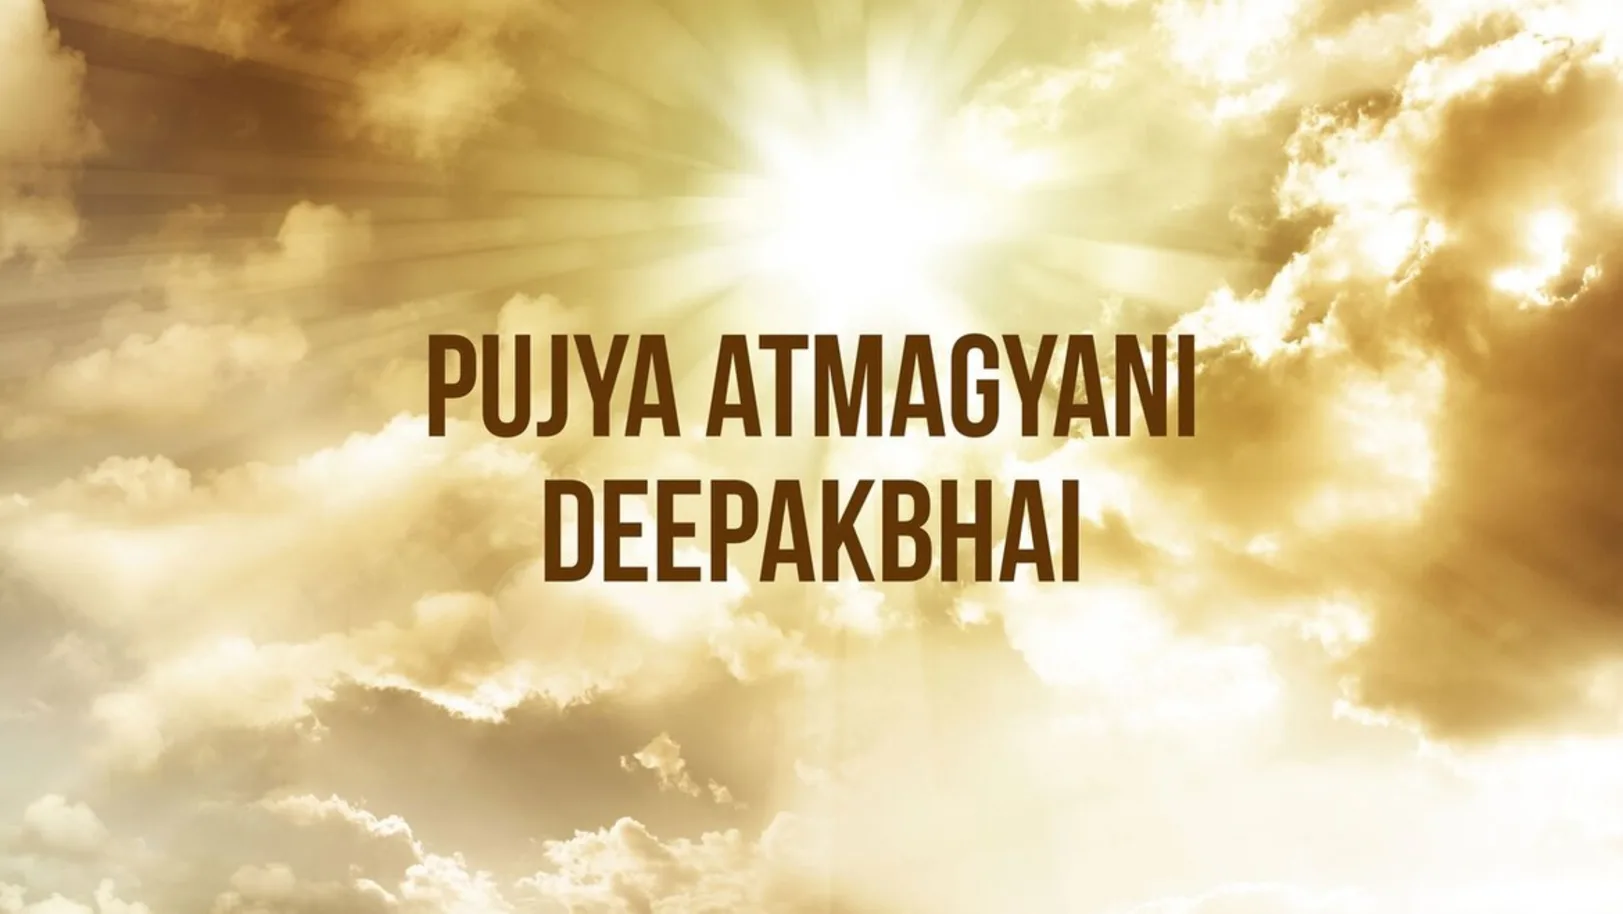 Pujya Atmagyani Deepakbhai Streaming Now On Dharm Sandesh